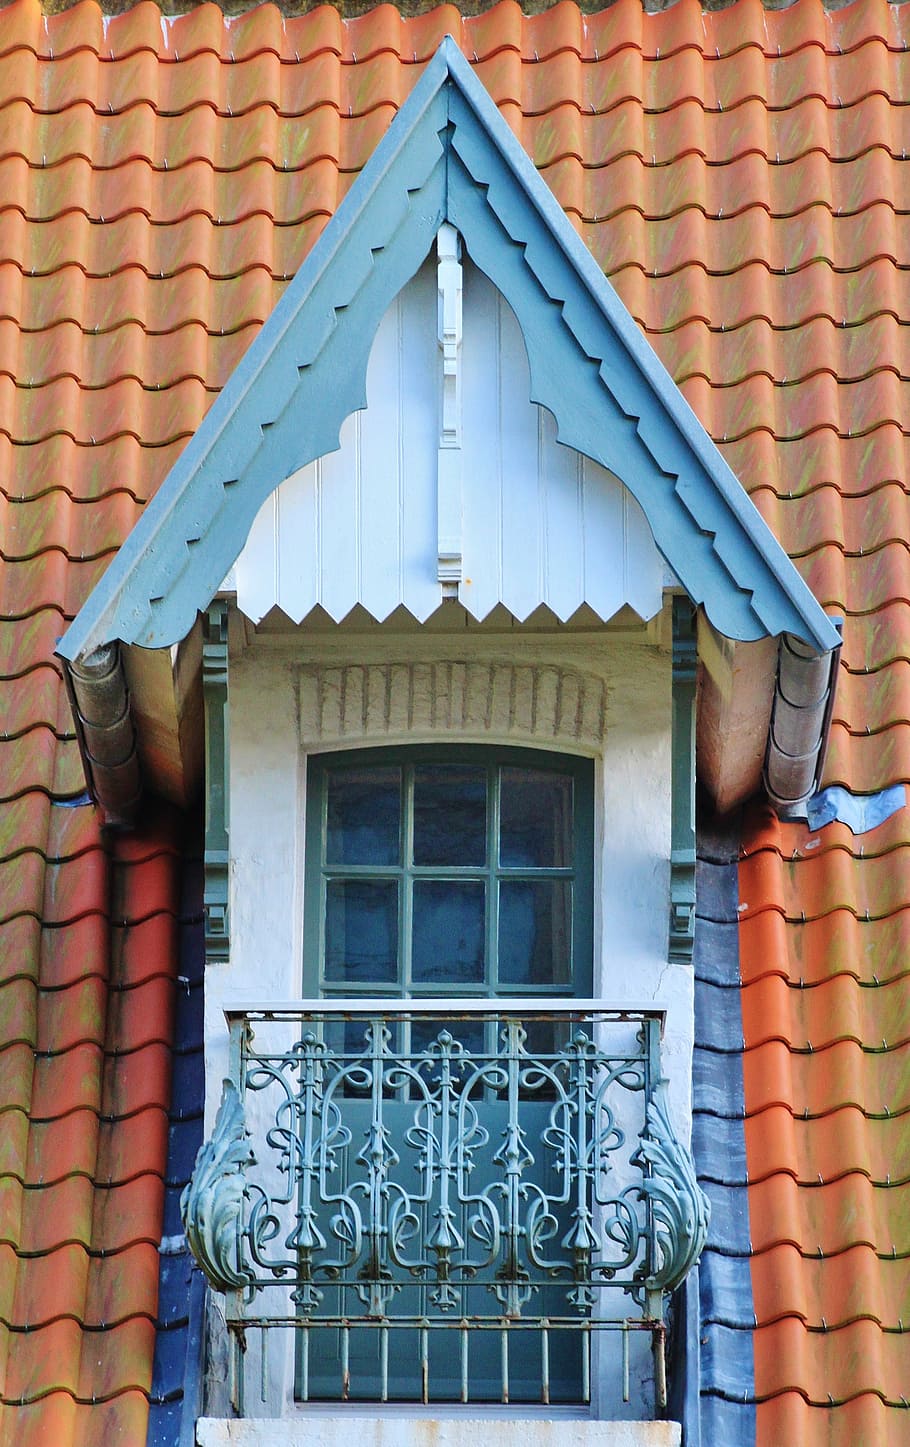 ventanas de techo, techo, teja, viejo, techos, romántico, balcón, techo de la casa, ventana panorámica, tallo del techo